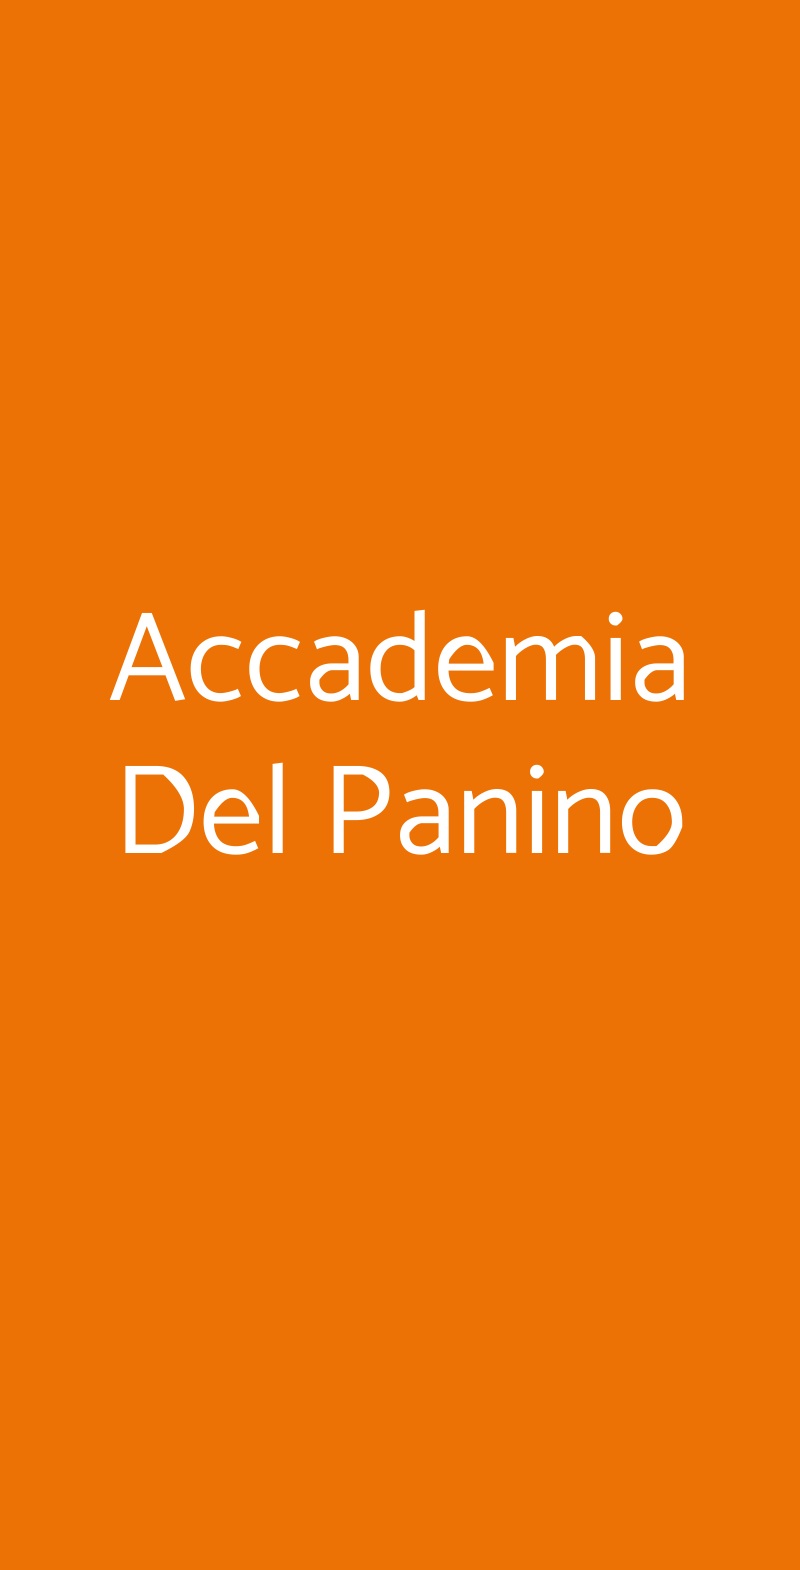 Accademia Del Panino Torino menù 1 pagina